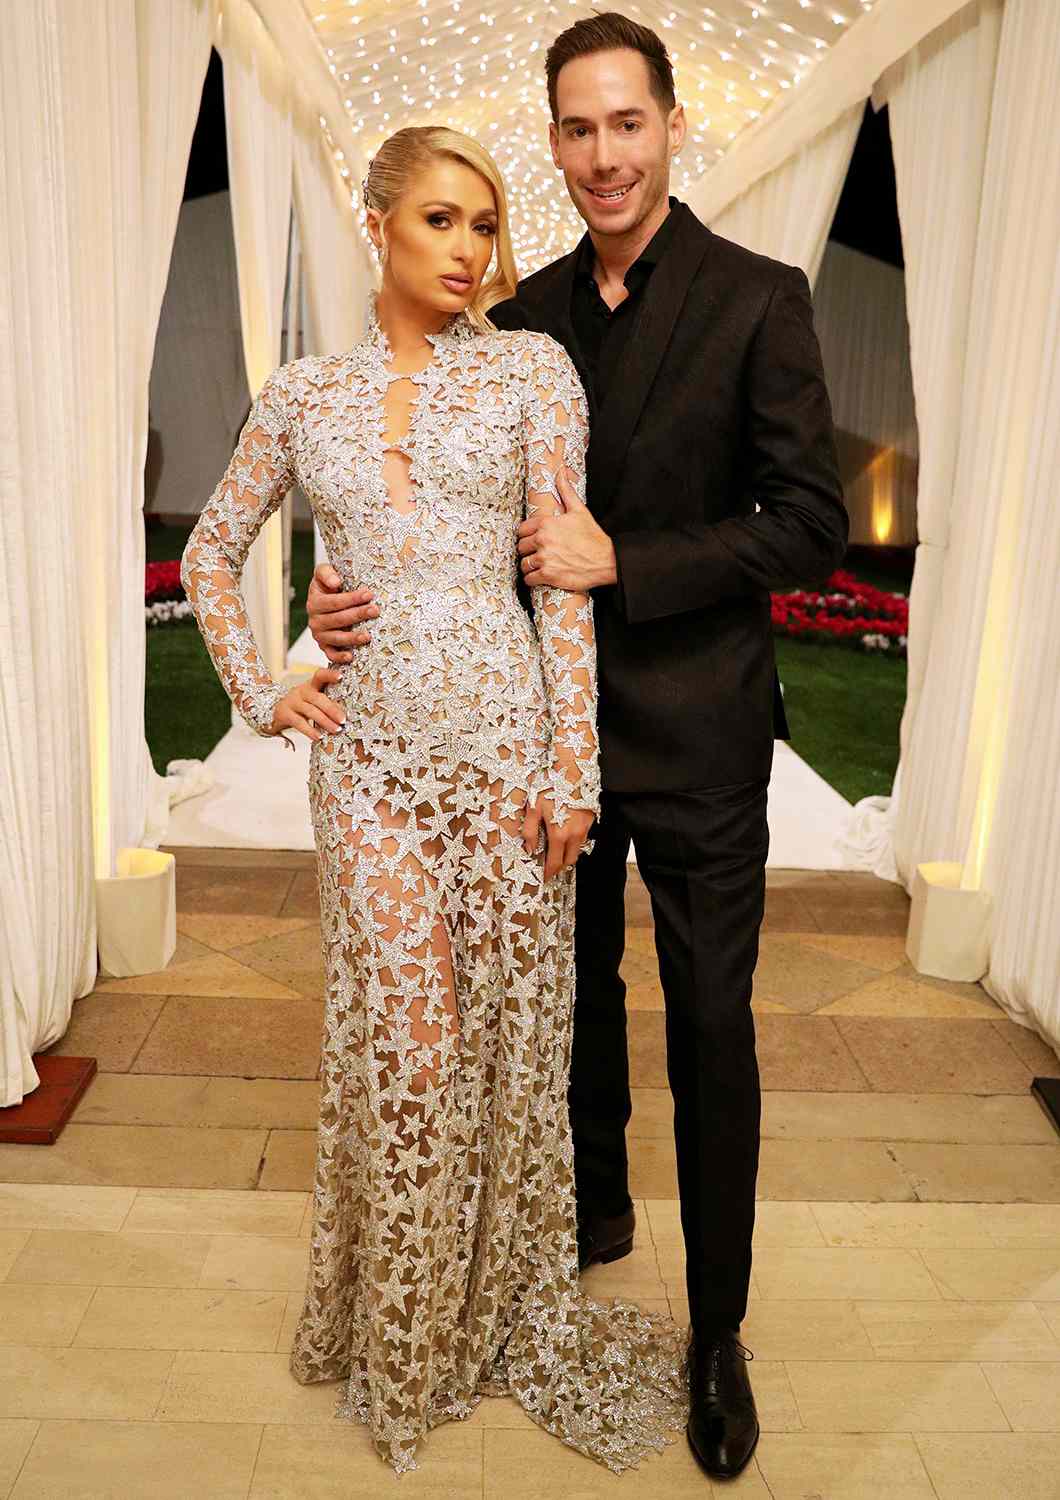 Paris Hilton and Carter Reum The wedding of Paris Hilton and Carter Reum, Second Reception, Bel Air, Los Angeles, California, USA - 13 Nov 2021